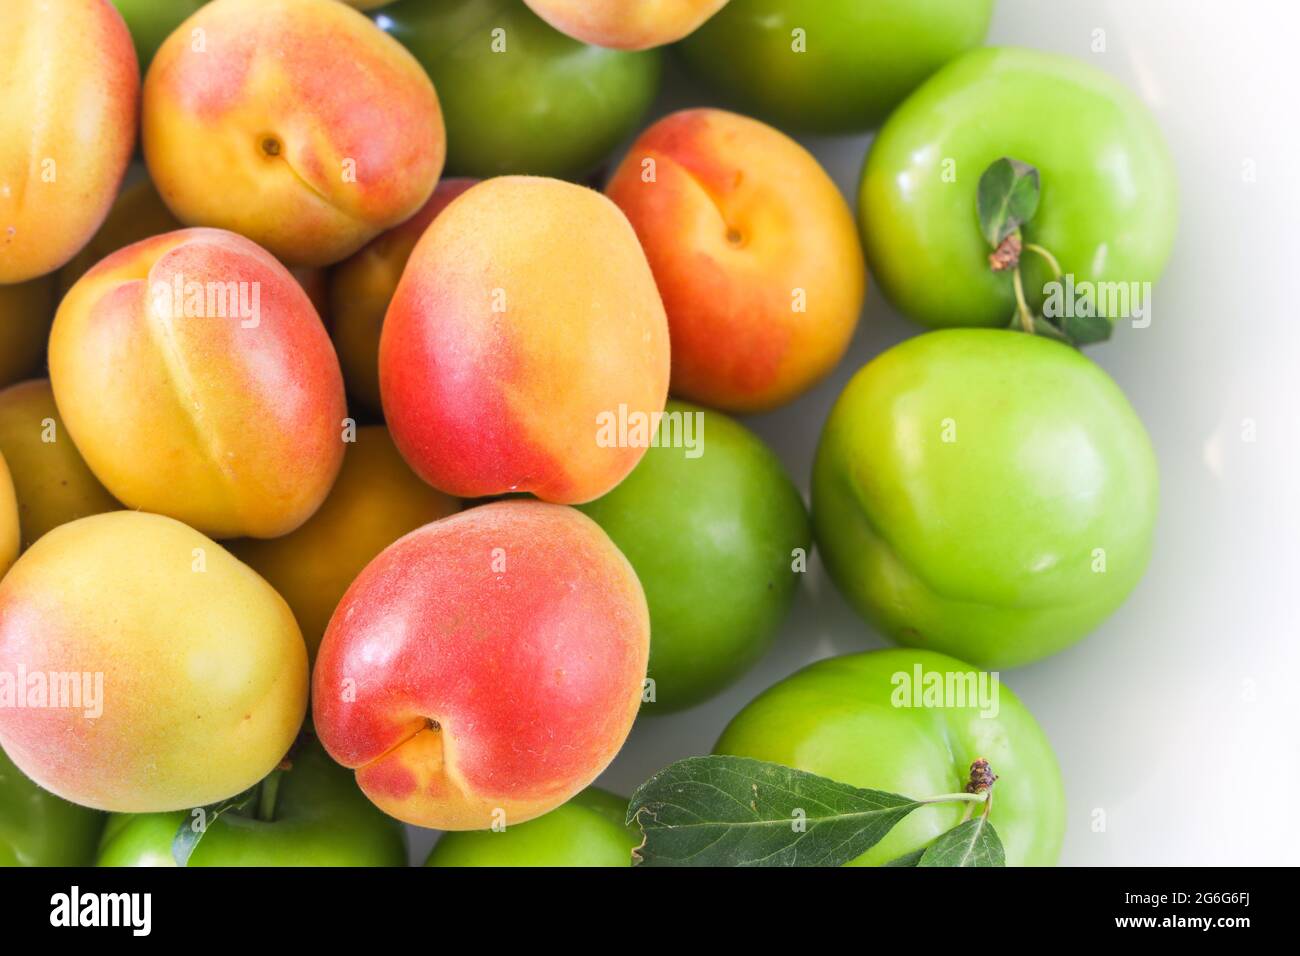 Groupe de prunes jaunes, rouges et vertes, abricot sur fond blanc, concept alimentaire, espace copie, vue de dessus. Banque D'Images